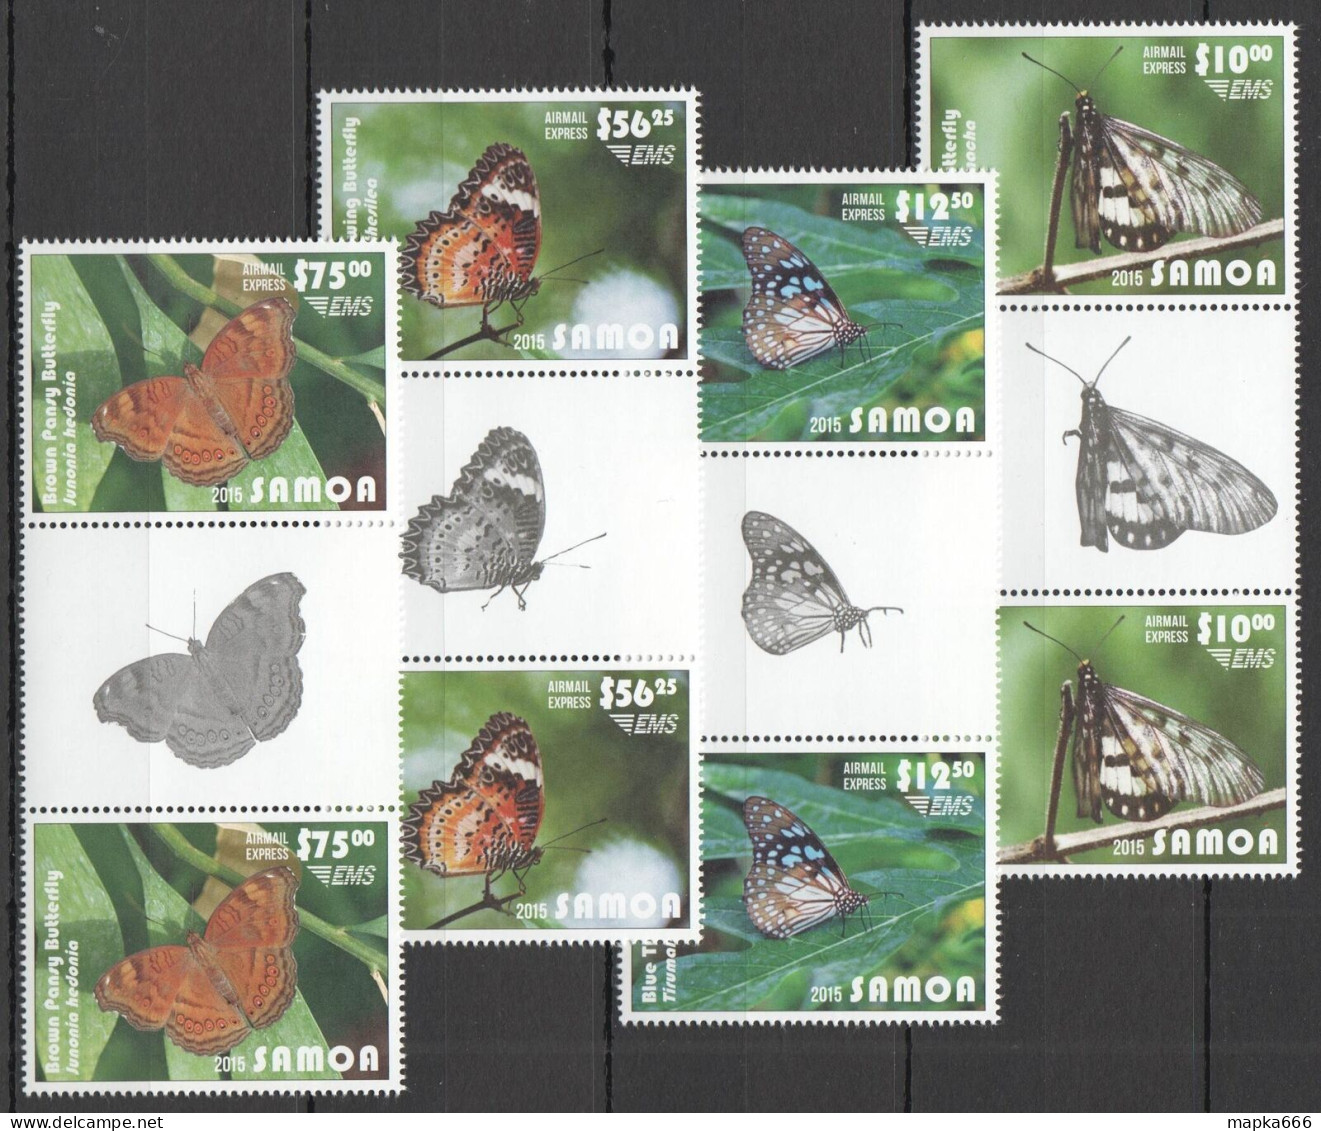 B1499 2015 Samoa Flora Fauna Butterflies Michel 240 Euro Gutter 2Set Mnh - Butterflies